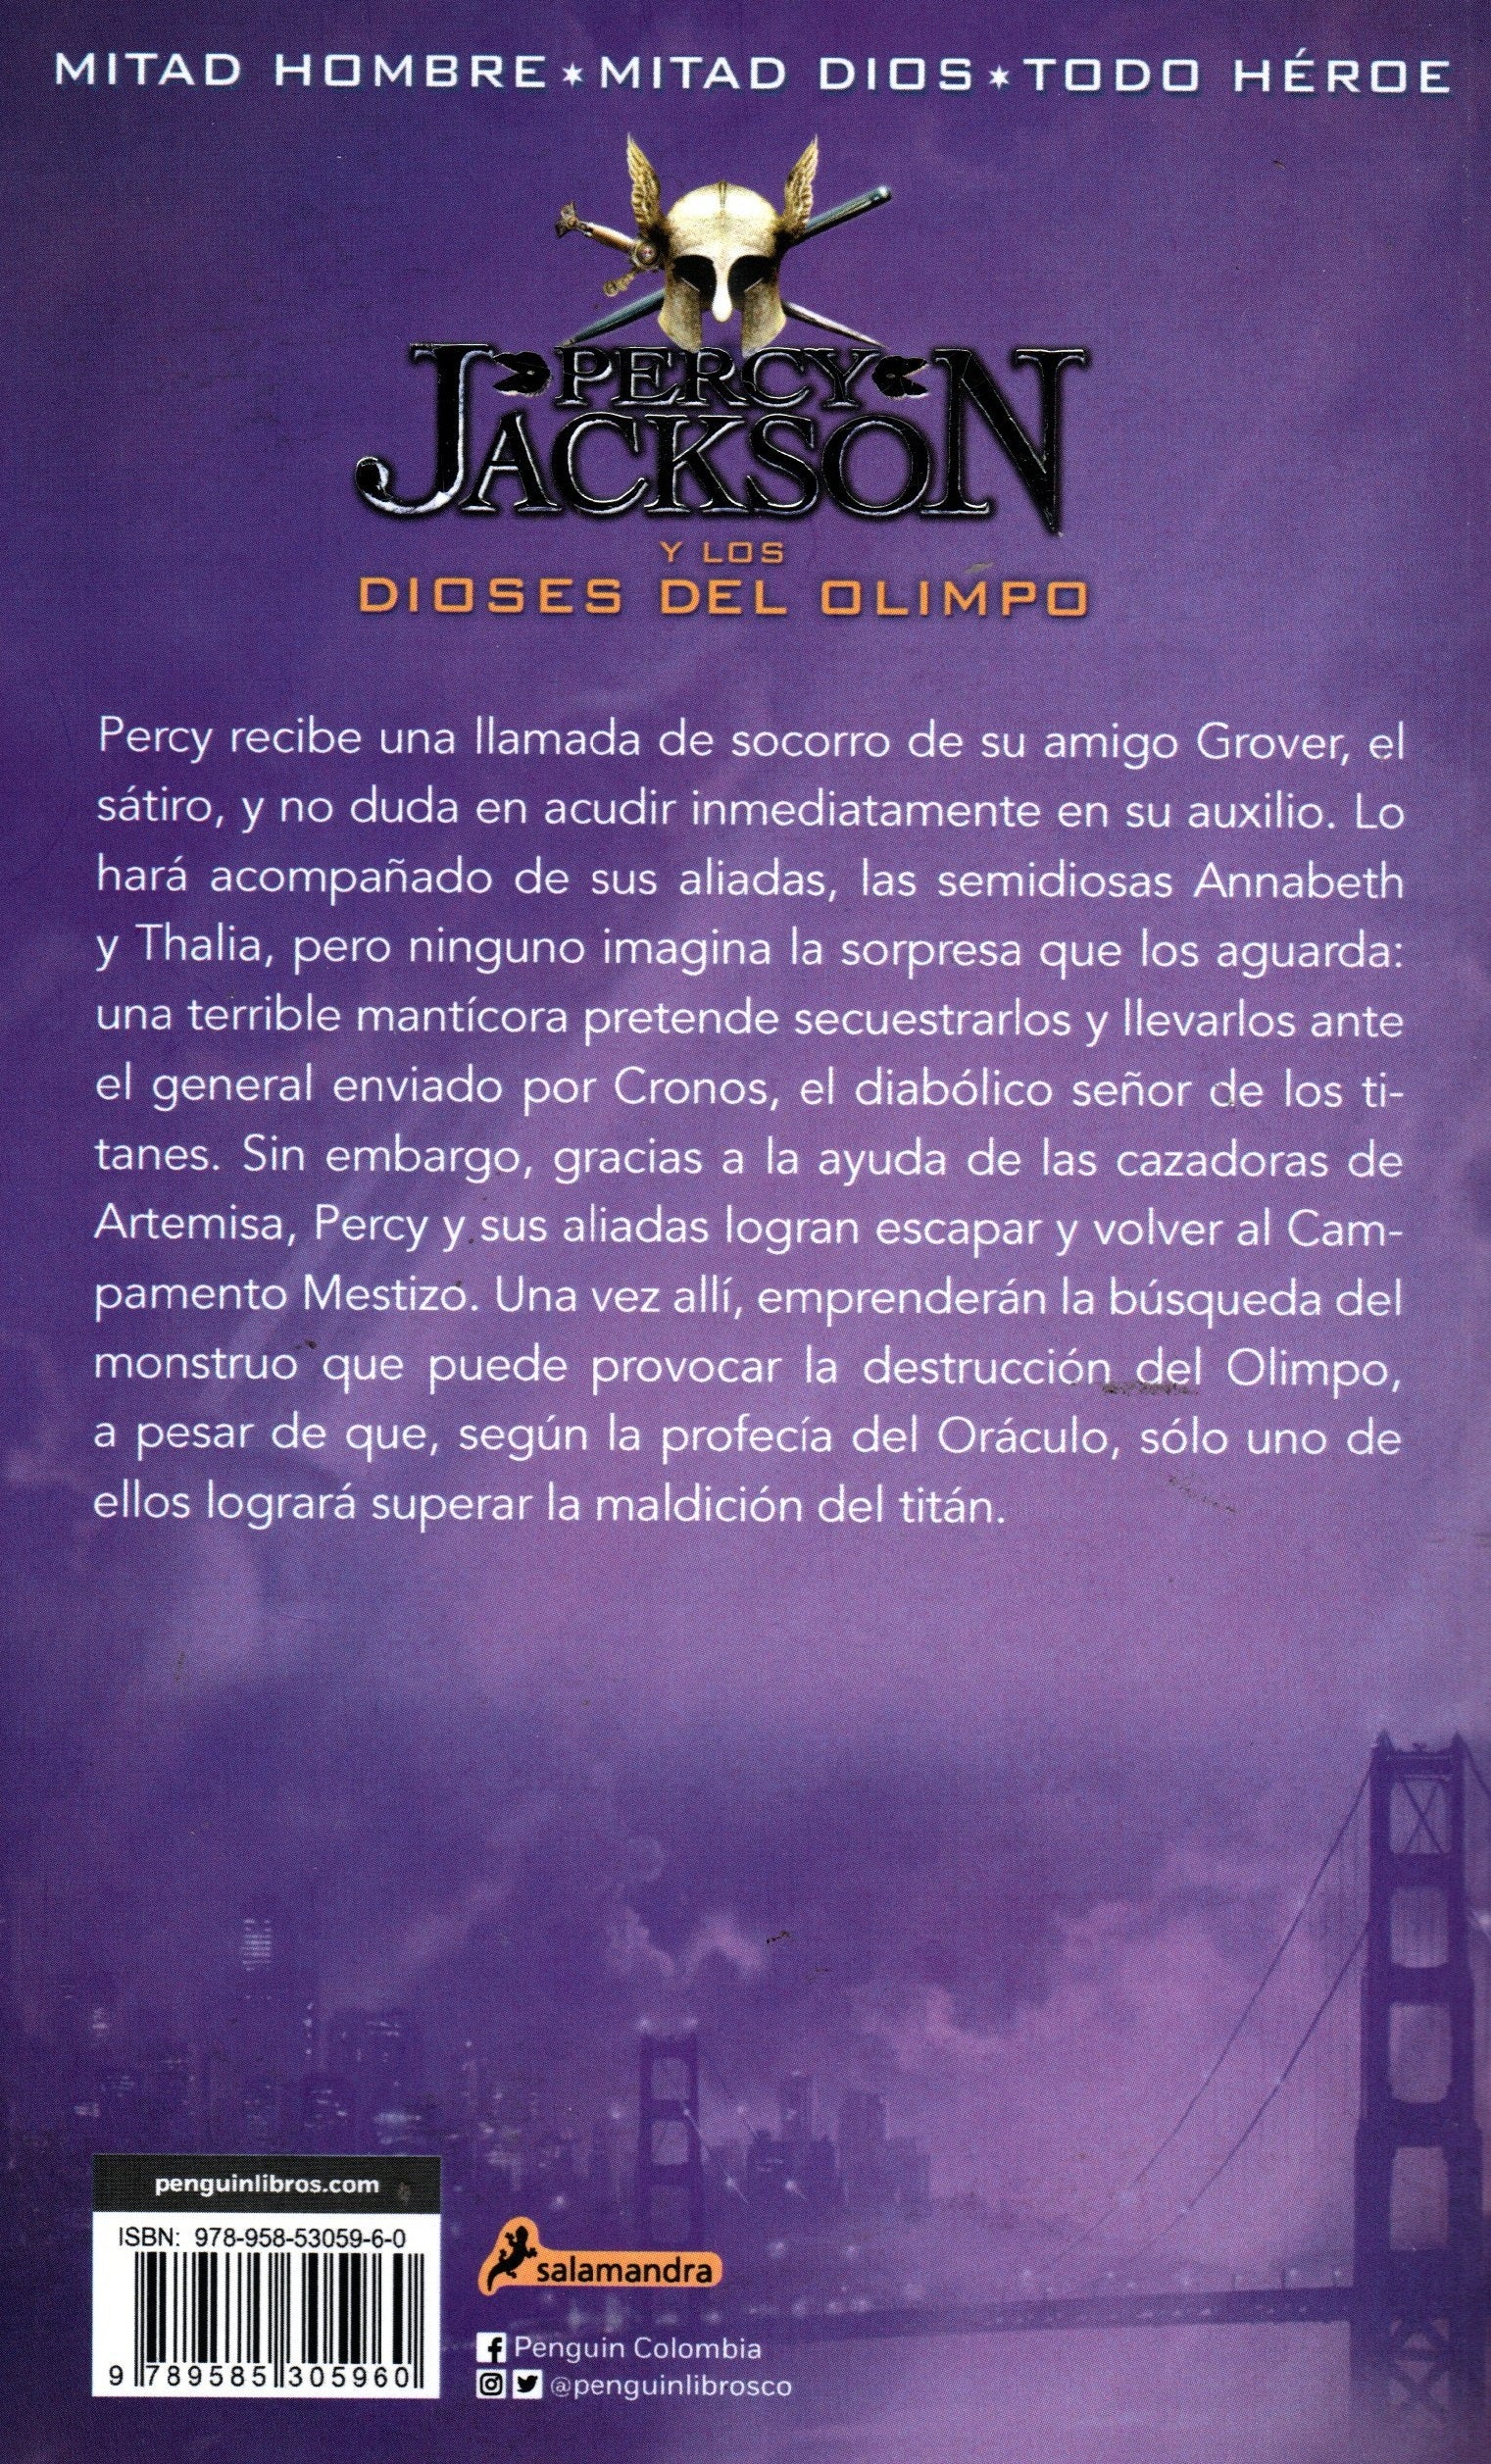 Libro Rick Riordan - Percy Jackson La Maldicion Del Titan